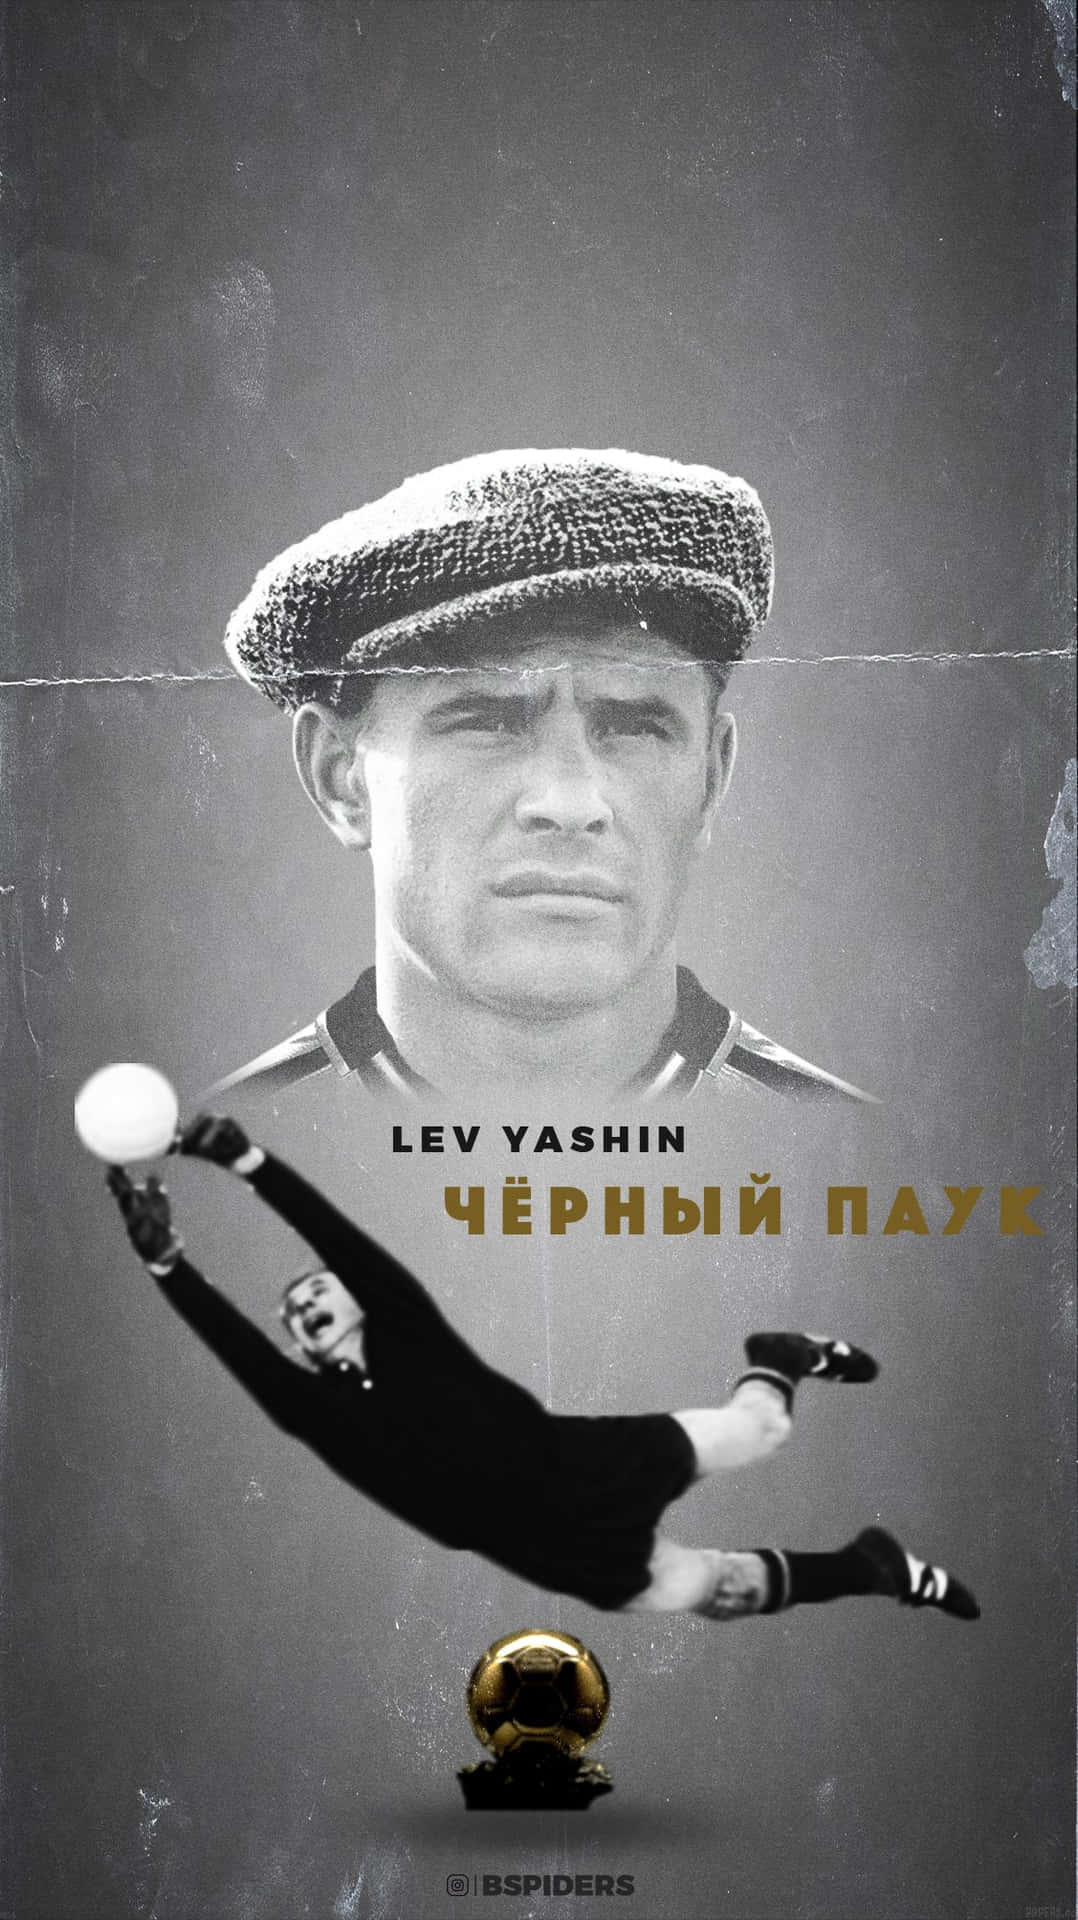 Åretsfotbollsspelare Lev Yashin. Wallpaper